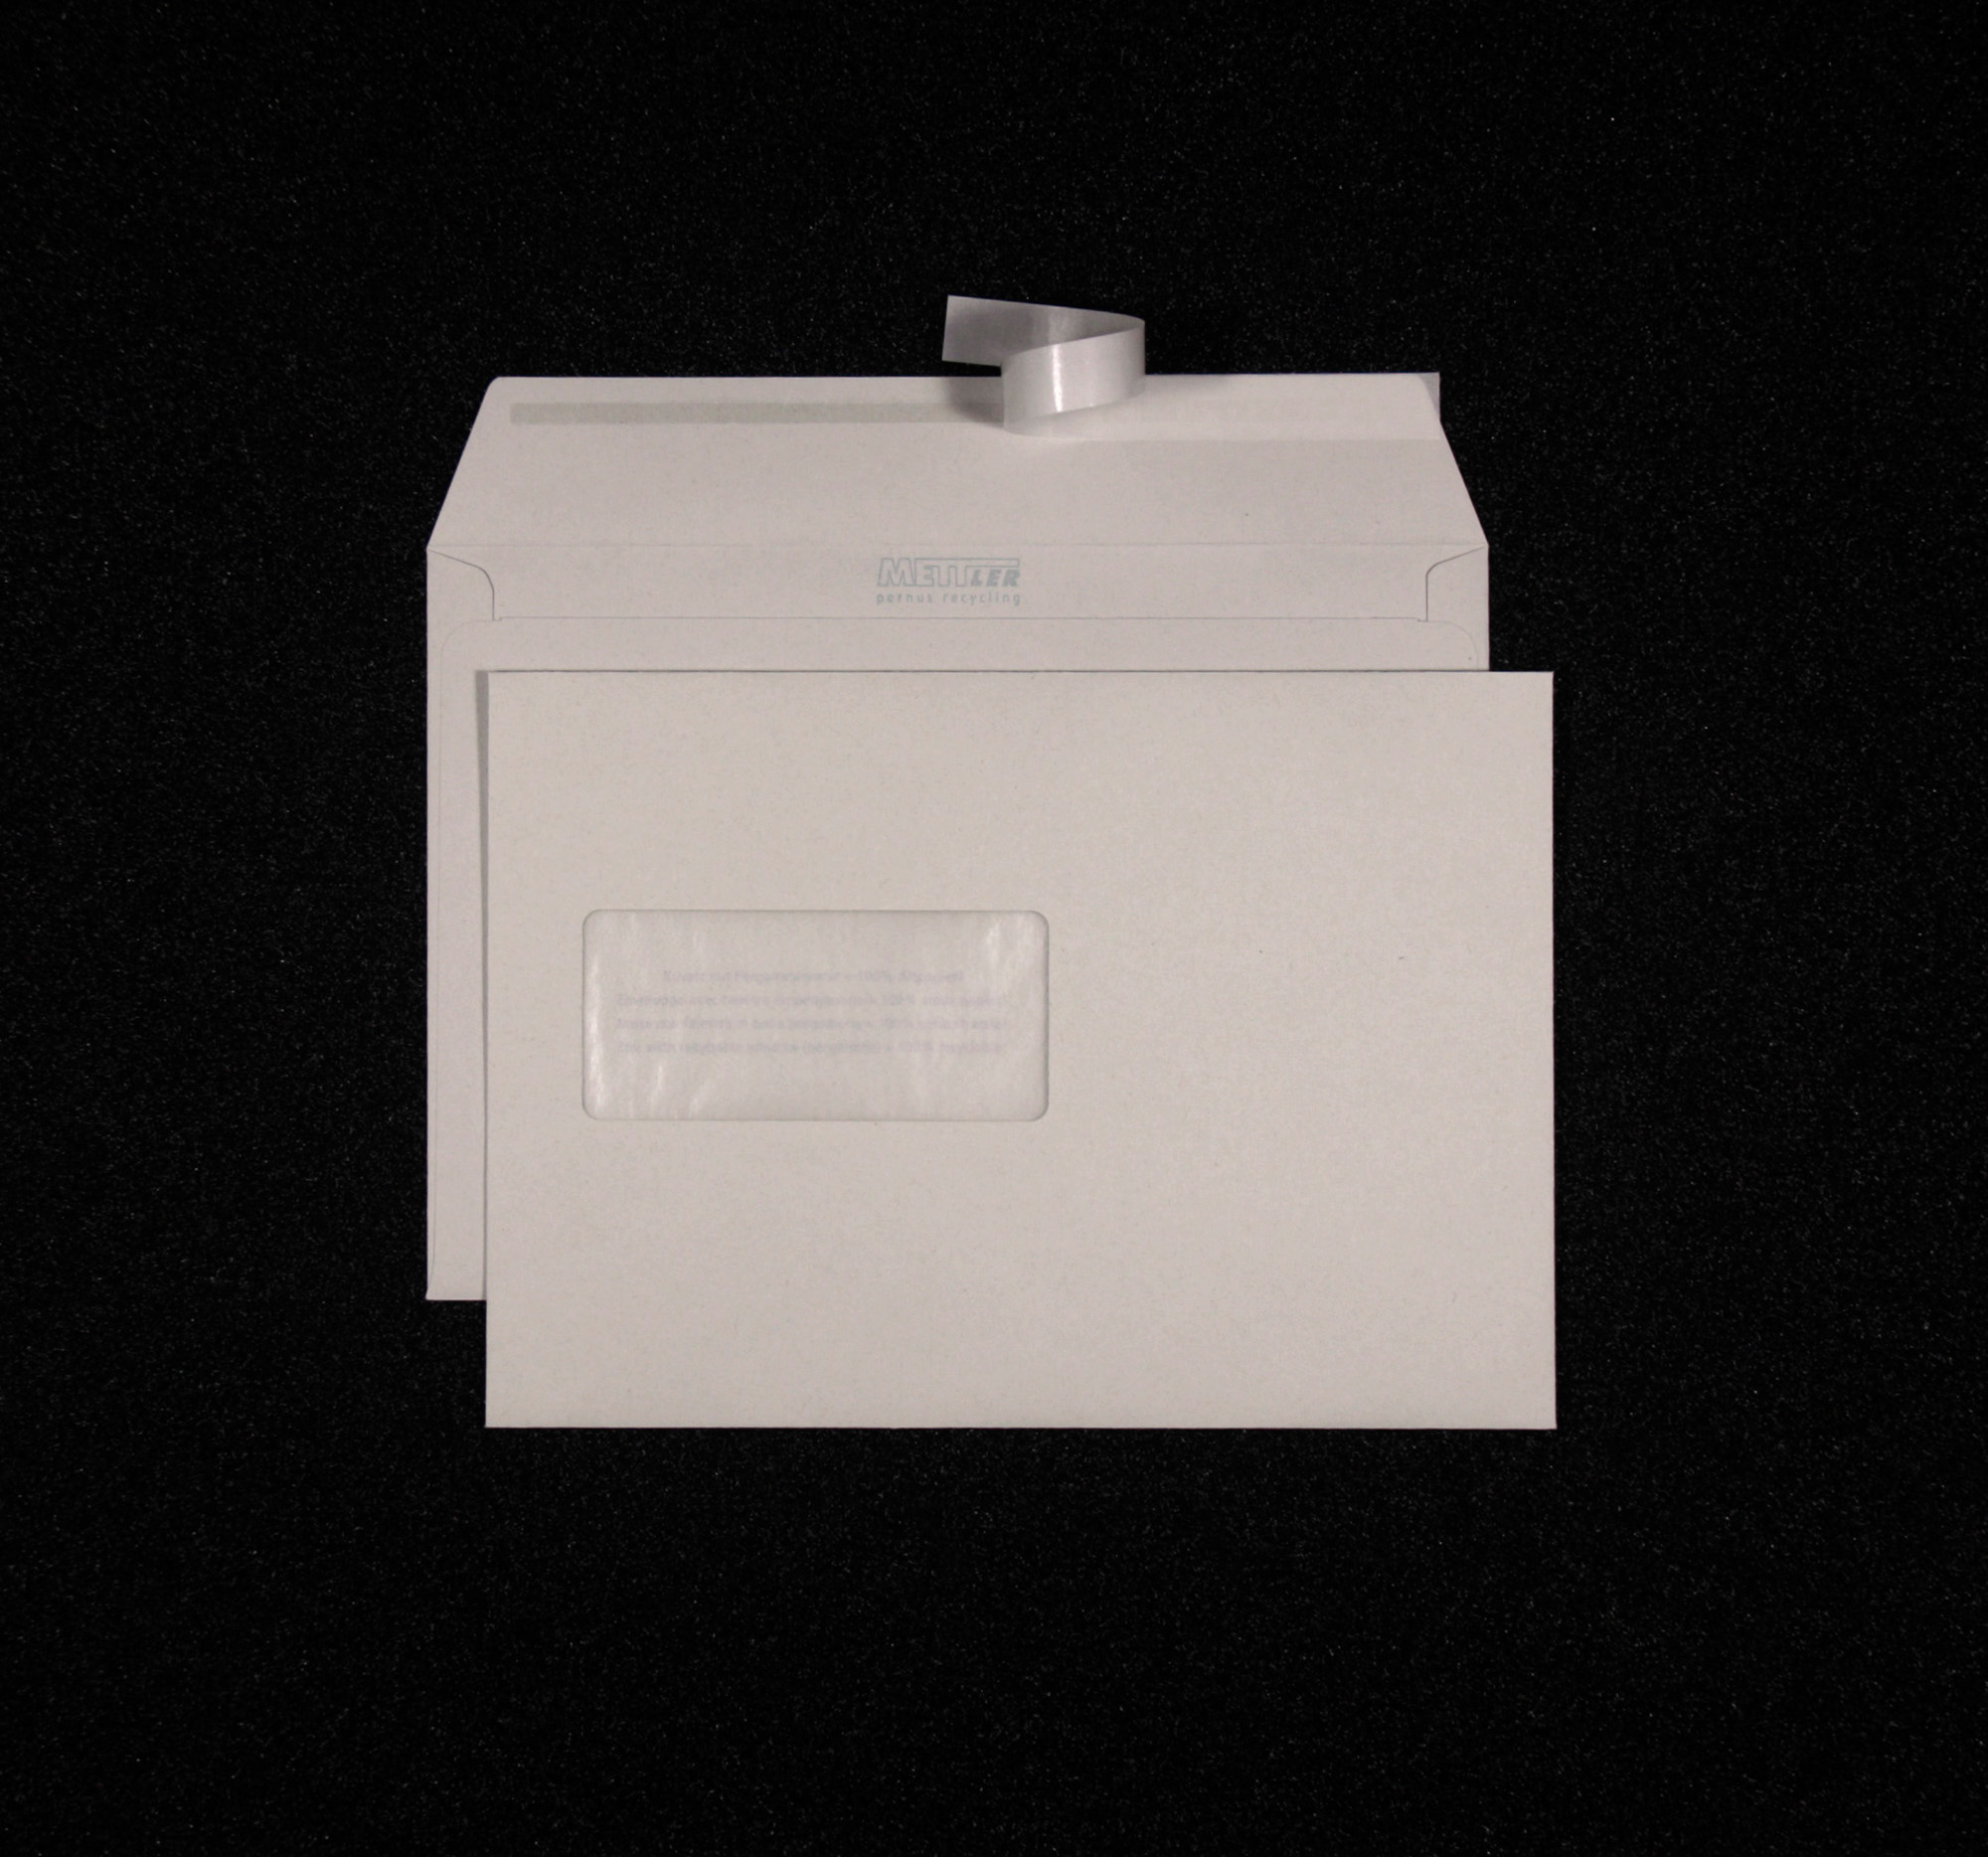 METTLER Enveloppe fenêtre gauche C5 8045 100g, recycling 500 pcs.